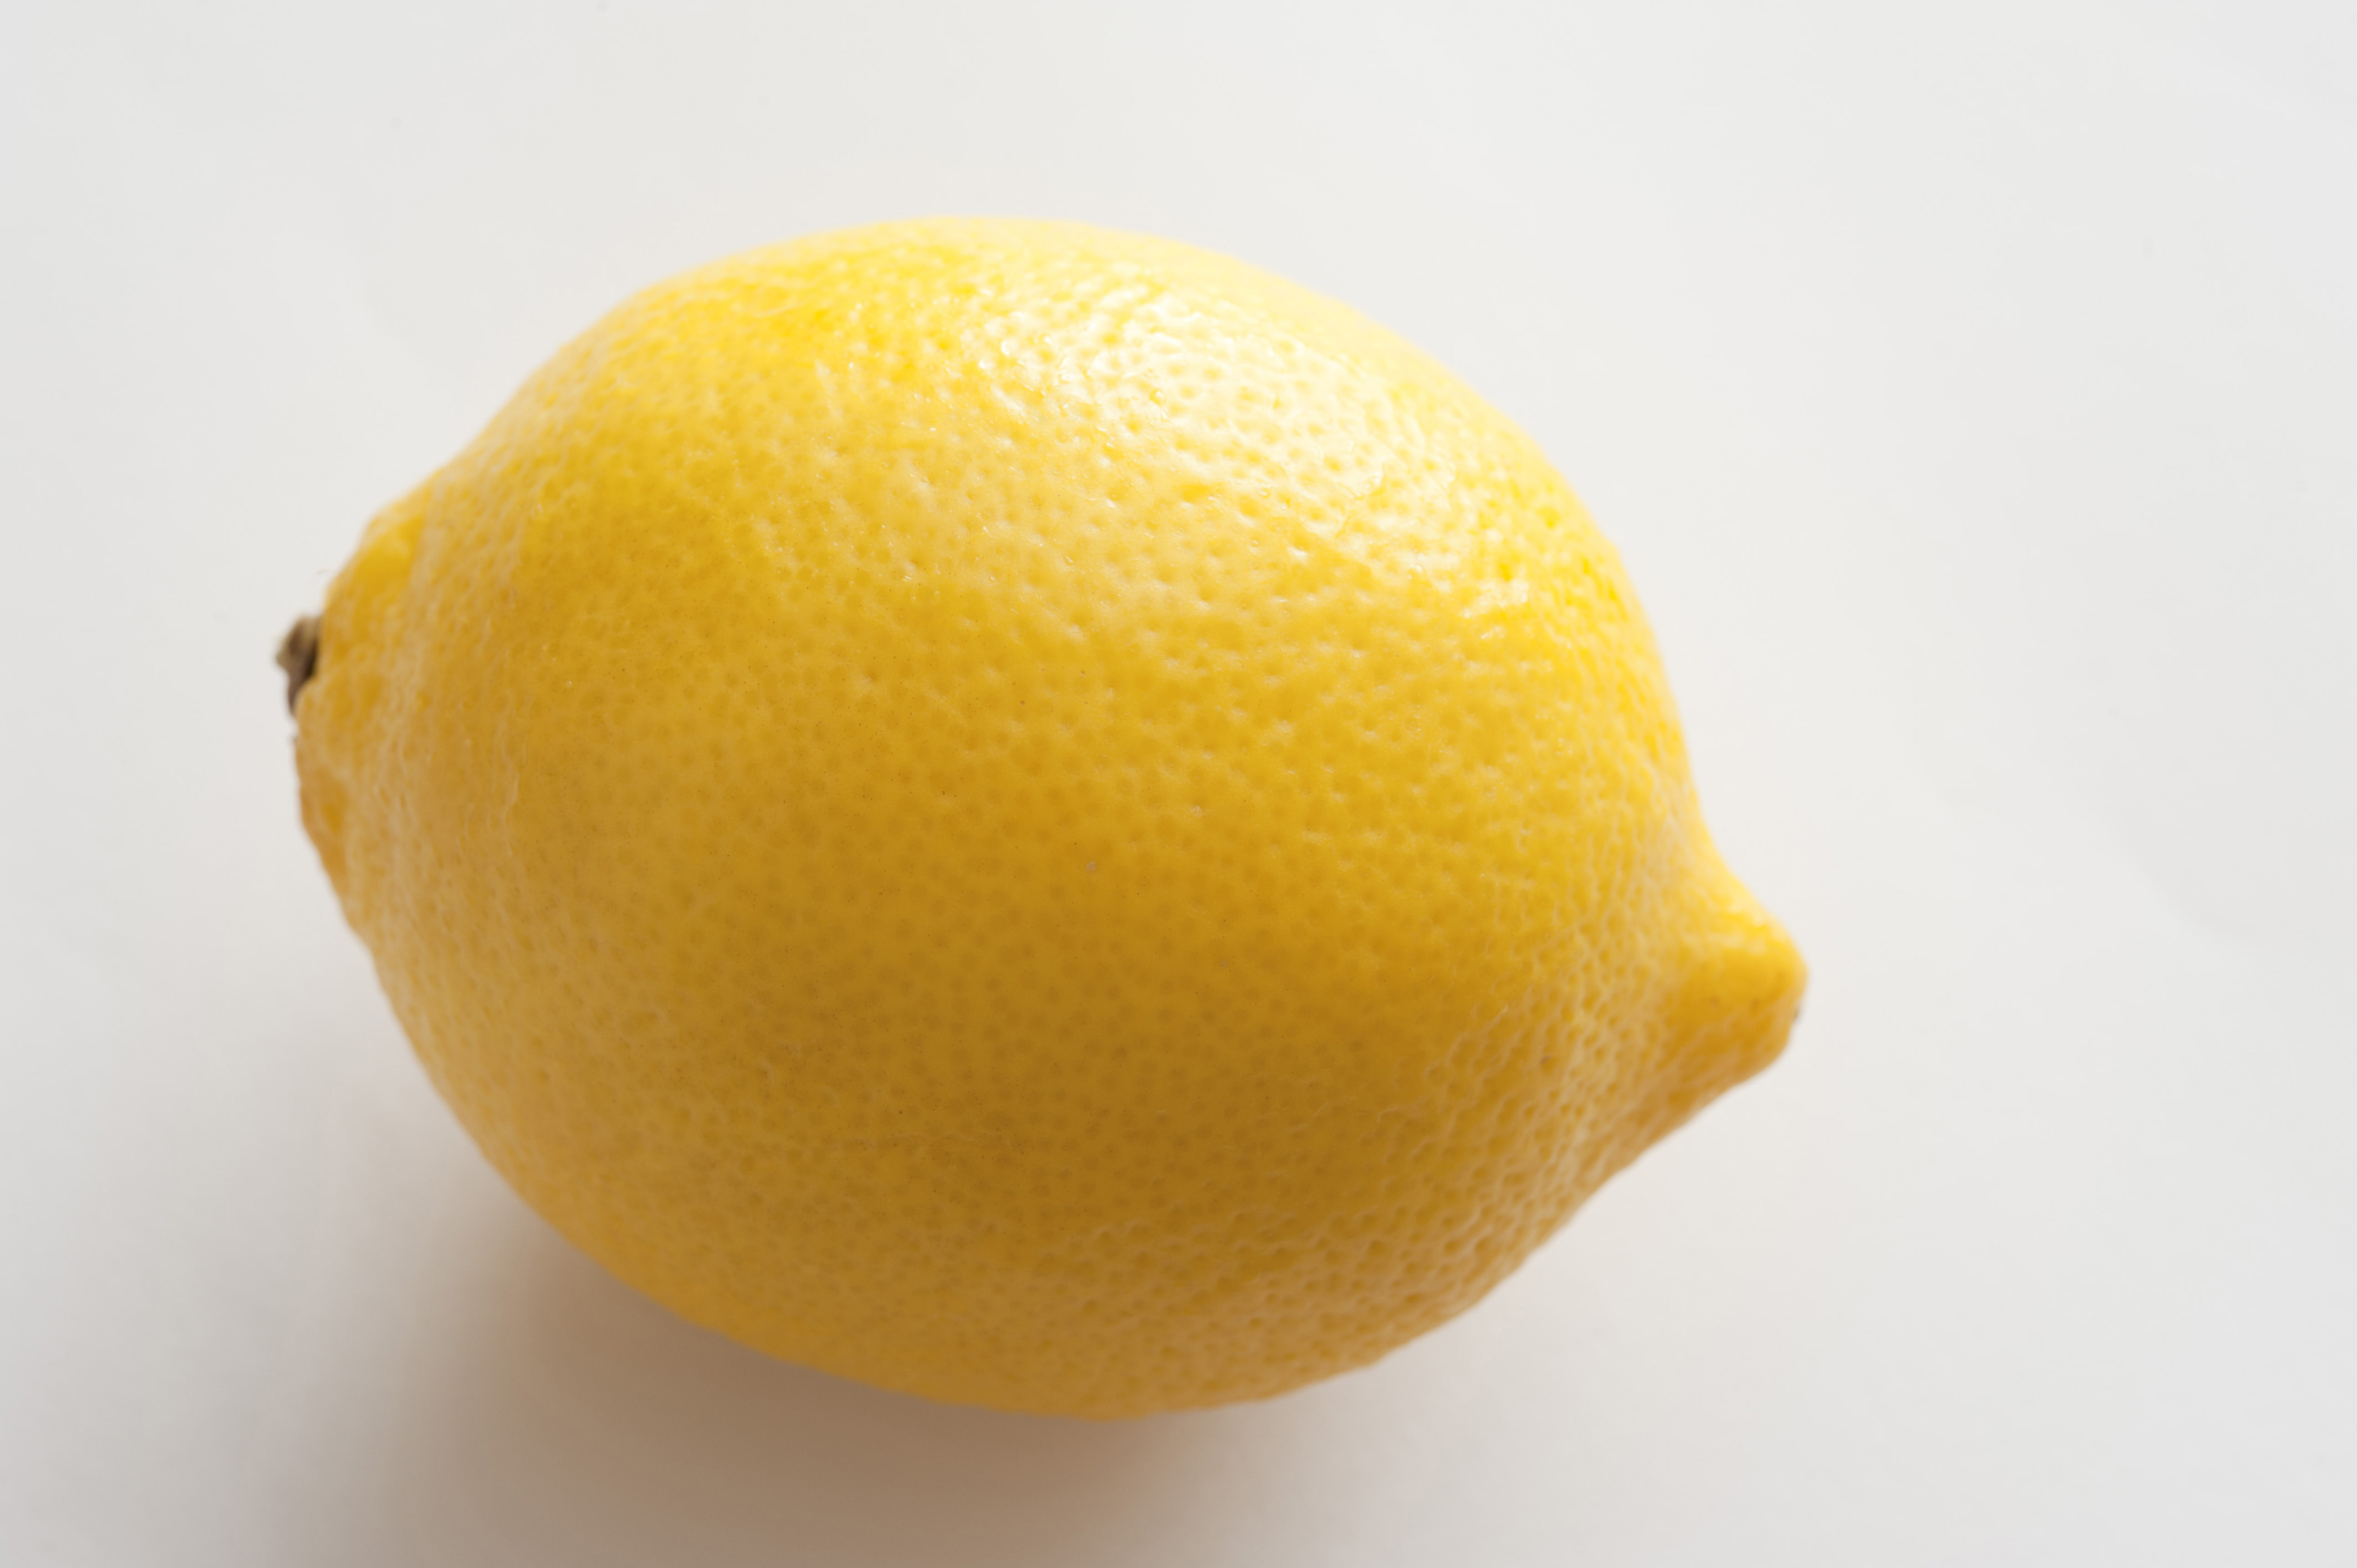 Close-up of yellow lemon on white background - Free Stock Image